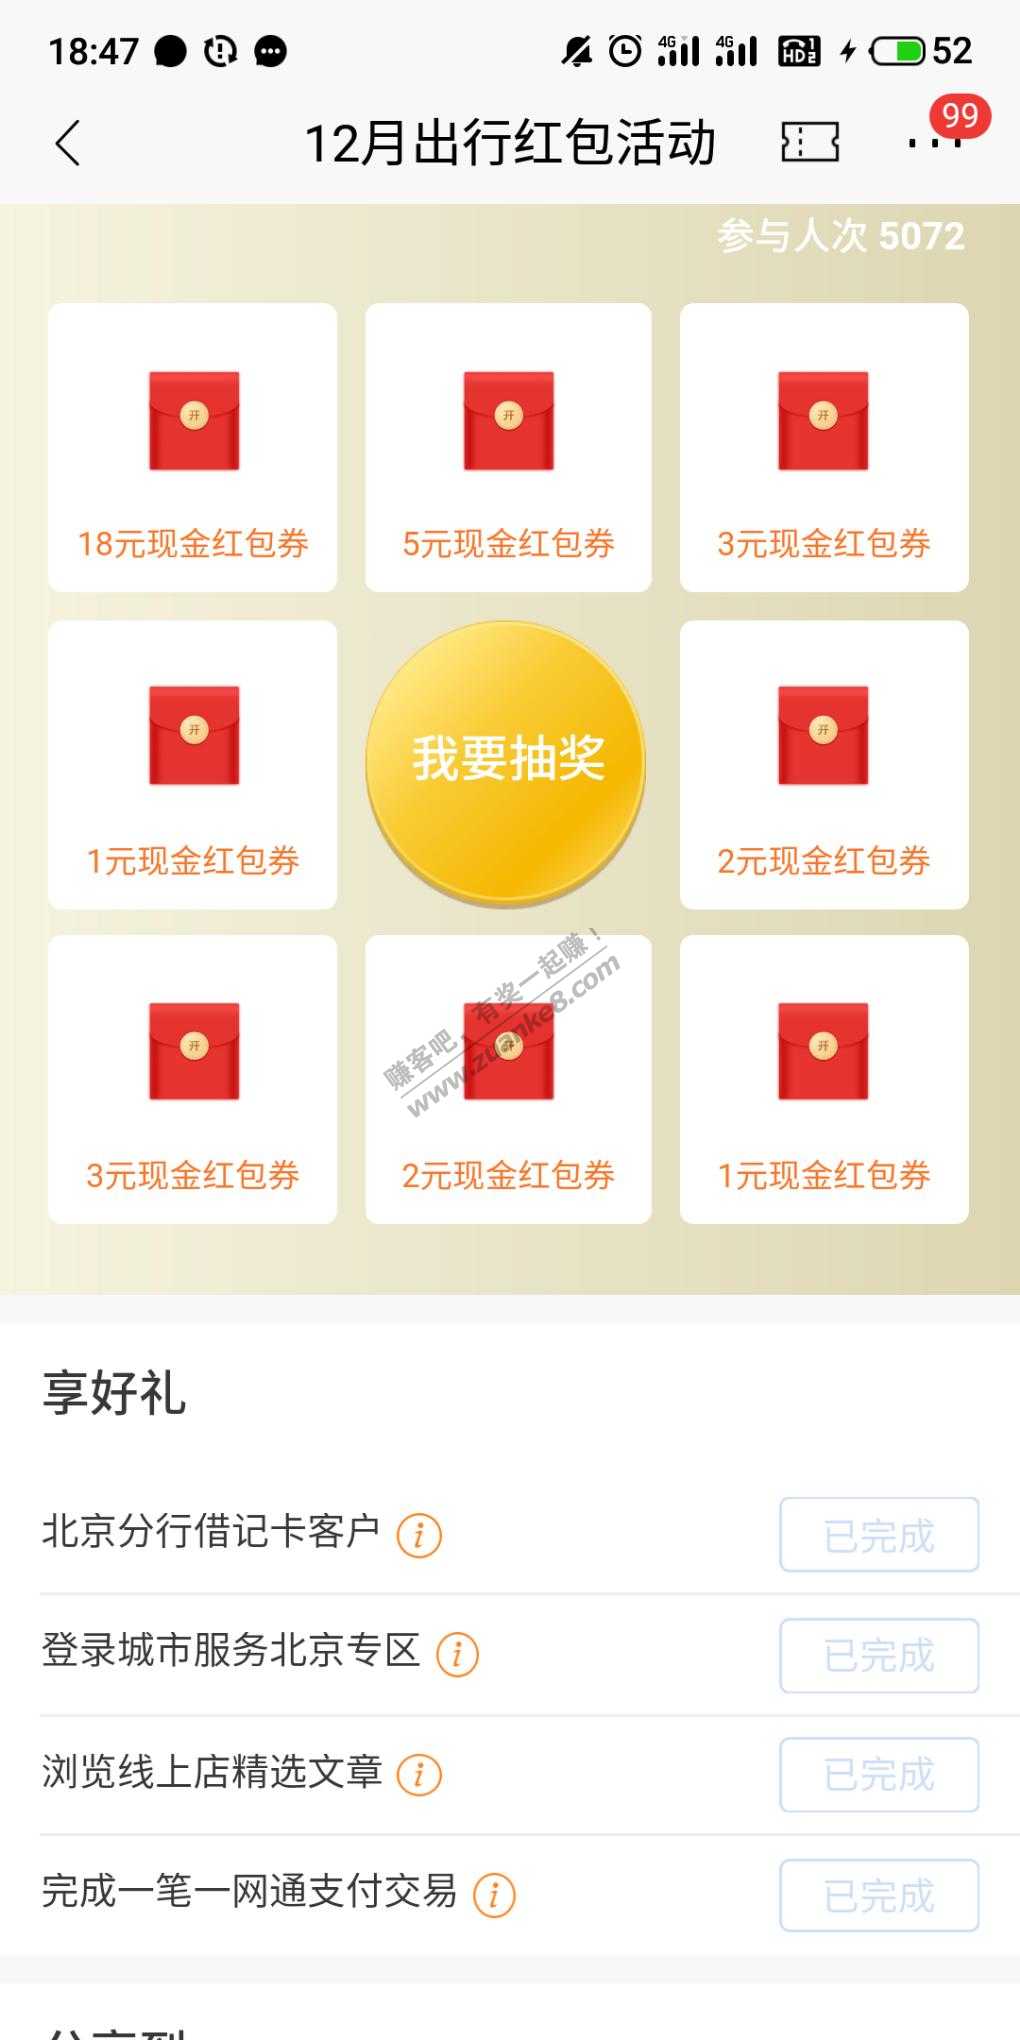 招商北京最低一元红包-惠小助(52huixz.com)